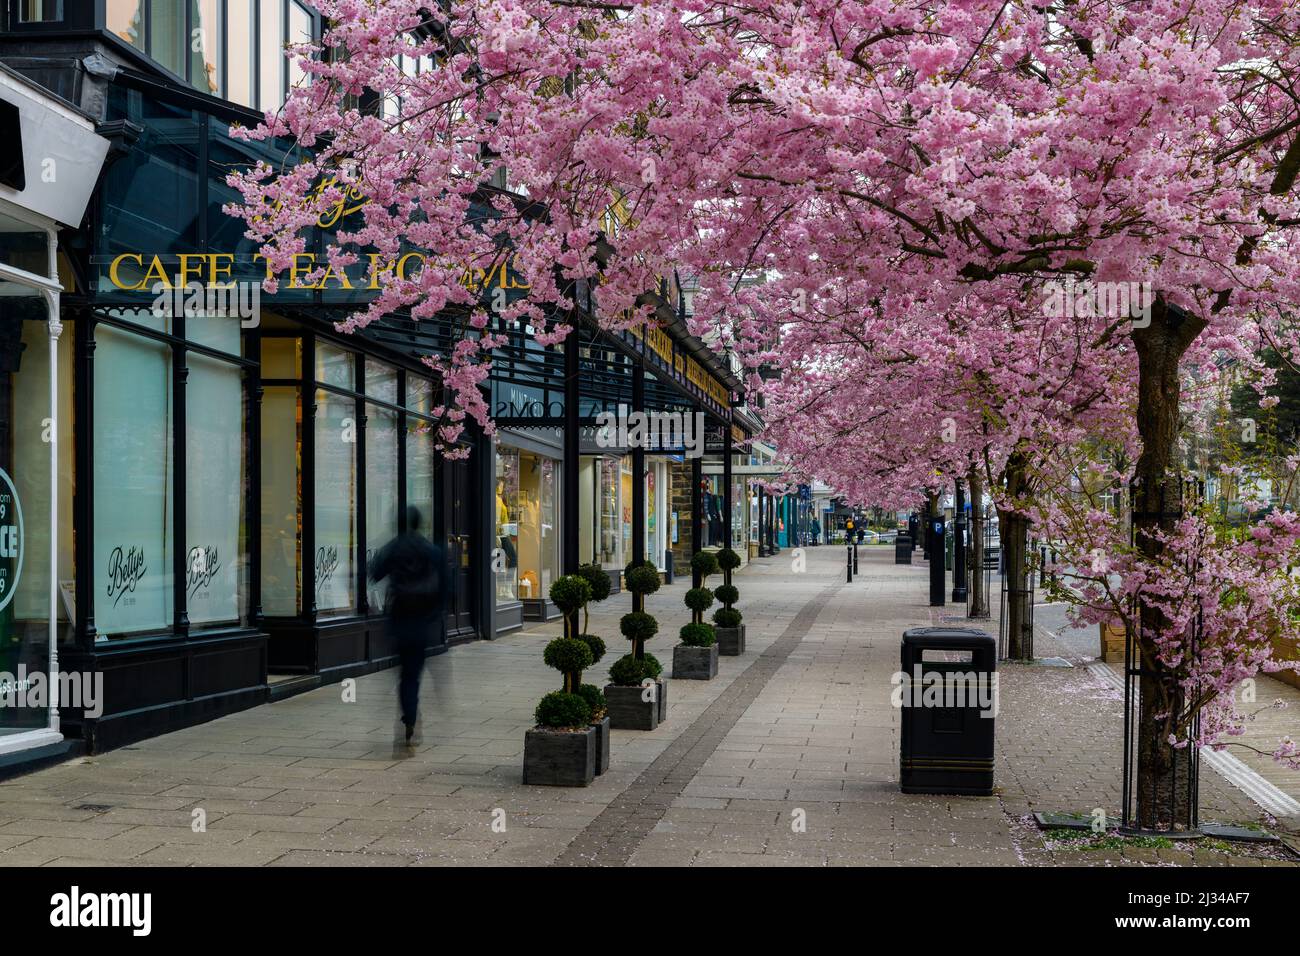 Pintoresco centro de la ciudad de primavera (hermosos y coloridos cerezos en flor, elegante restaurante-cafetería frente a la tienda) - The Grove, Ilkley, Yorkshire, Inglaterra, Reino Unido. Foto de stock